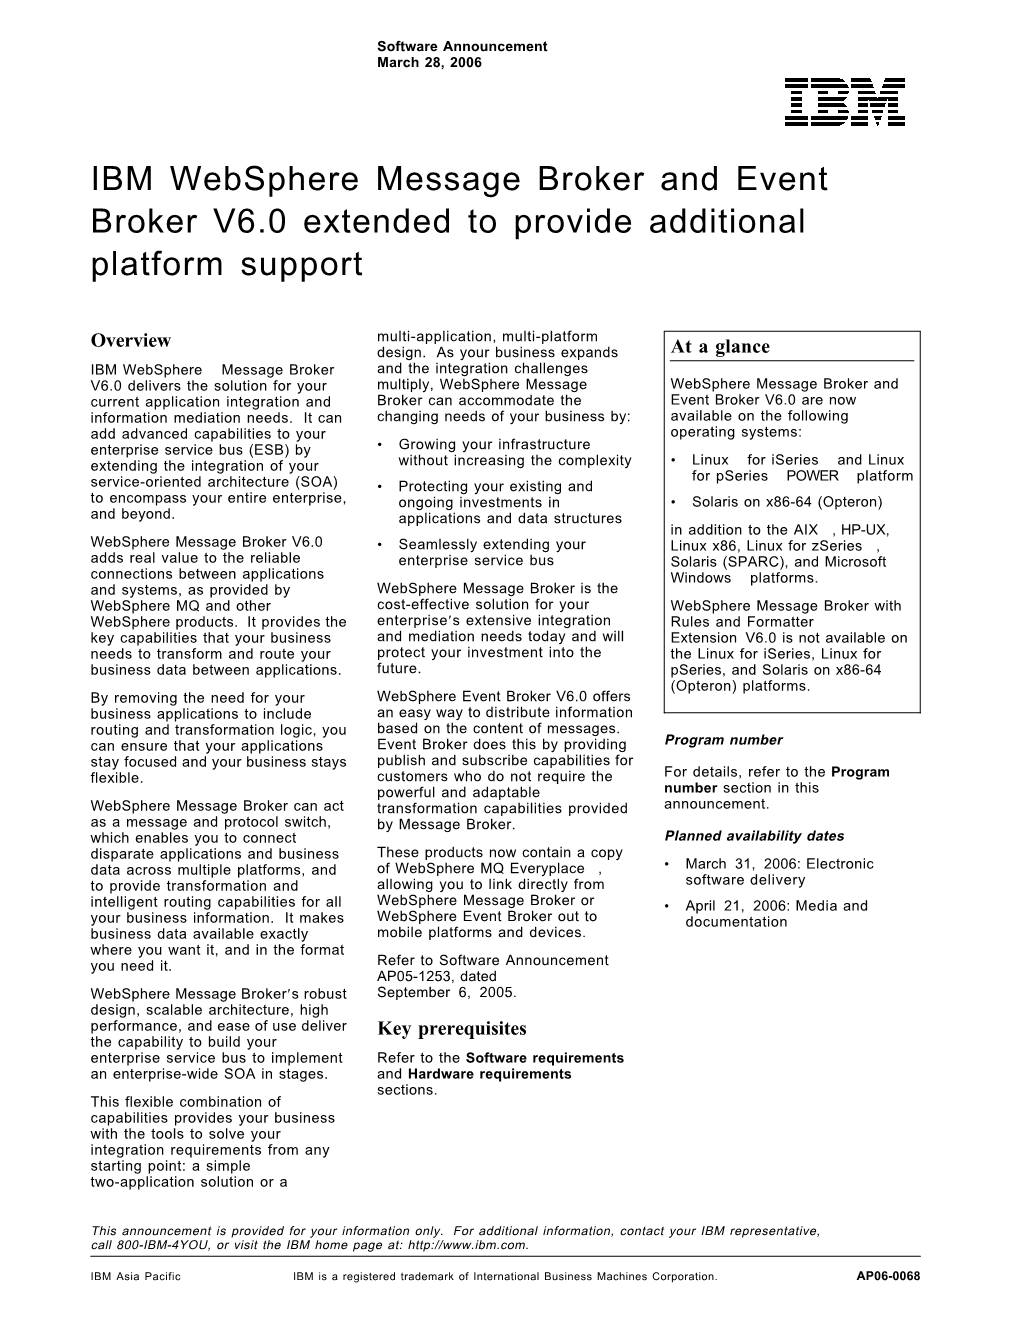 IBM Websphere Message Broker and Event Broker V6.0 Extended to Provide Additional Platform Support